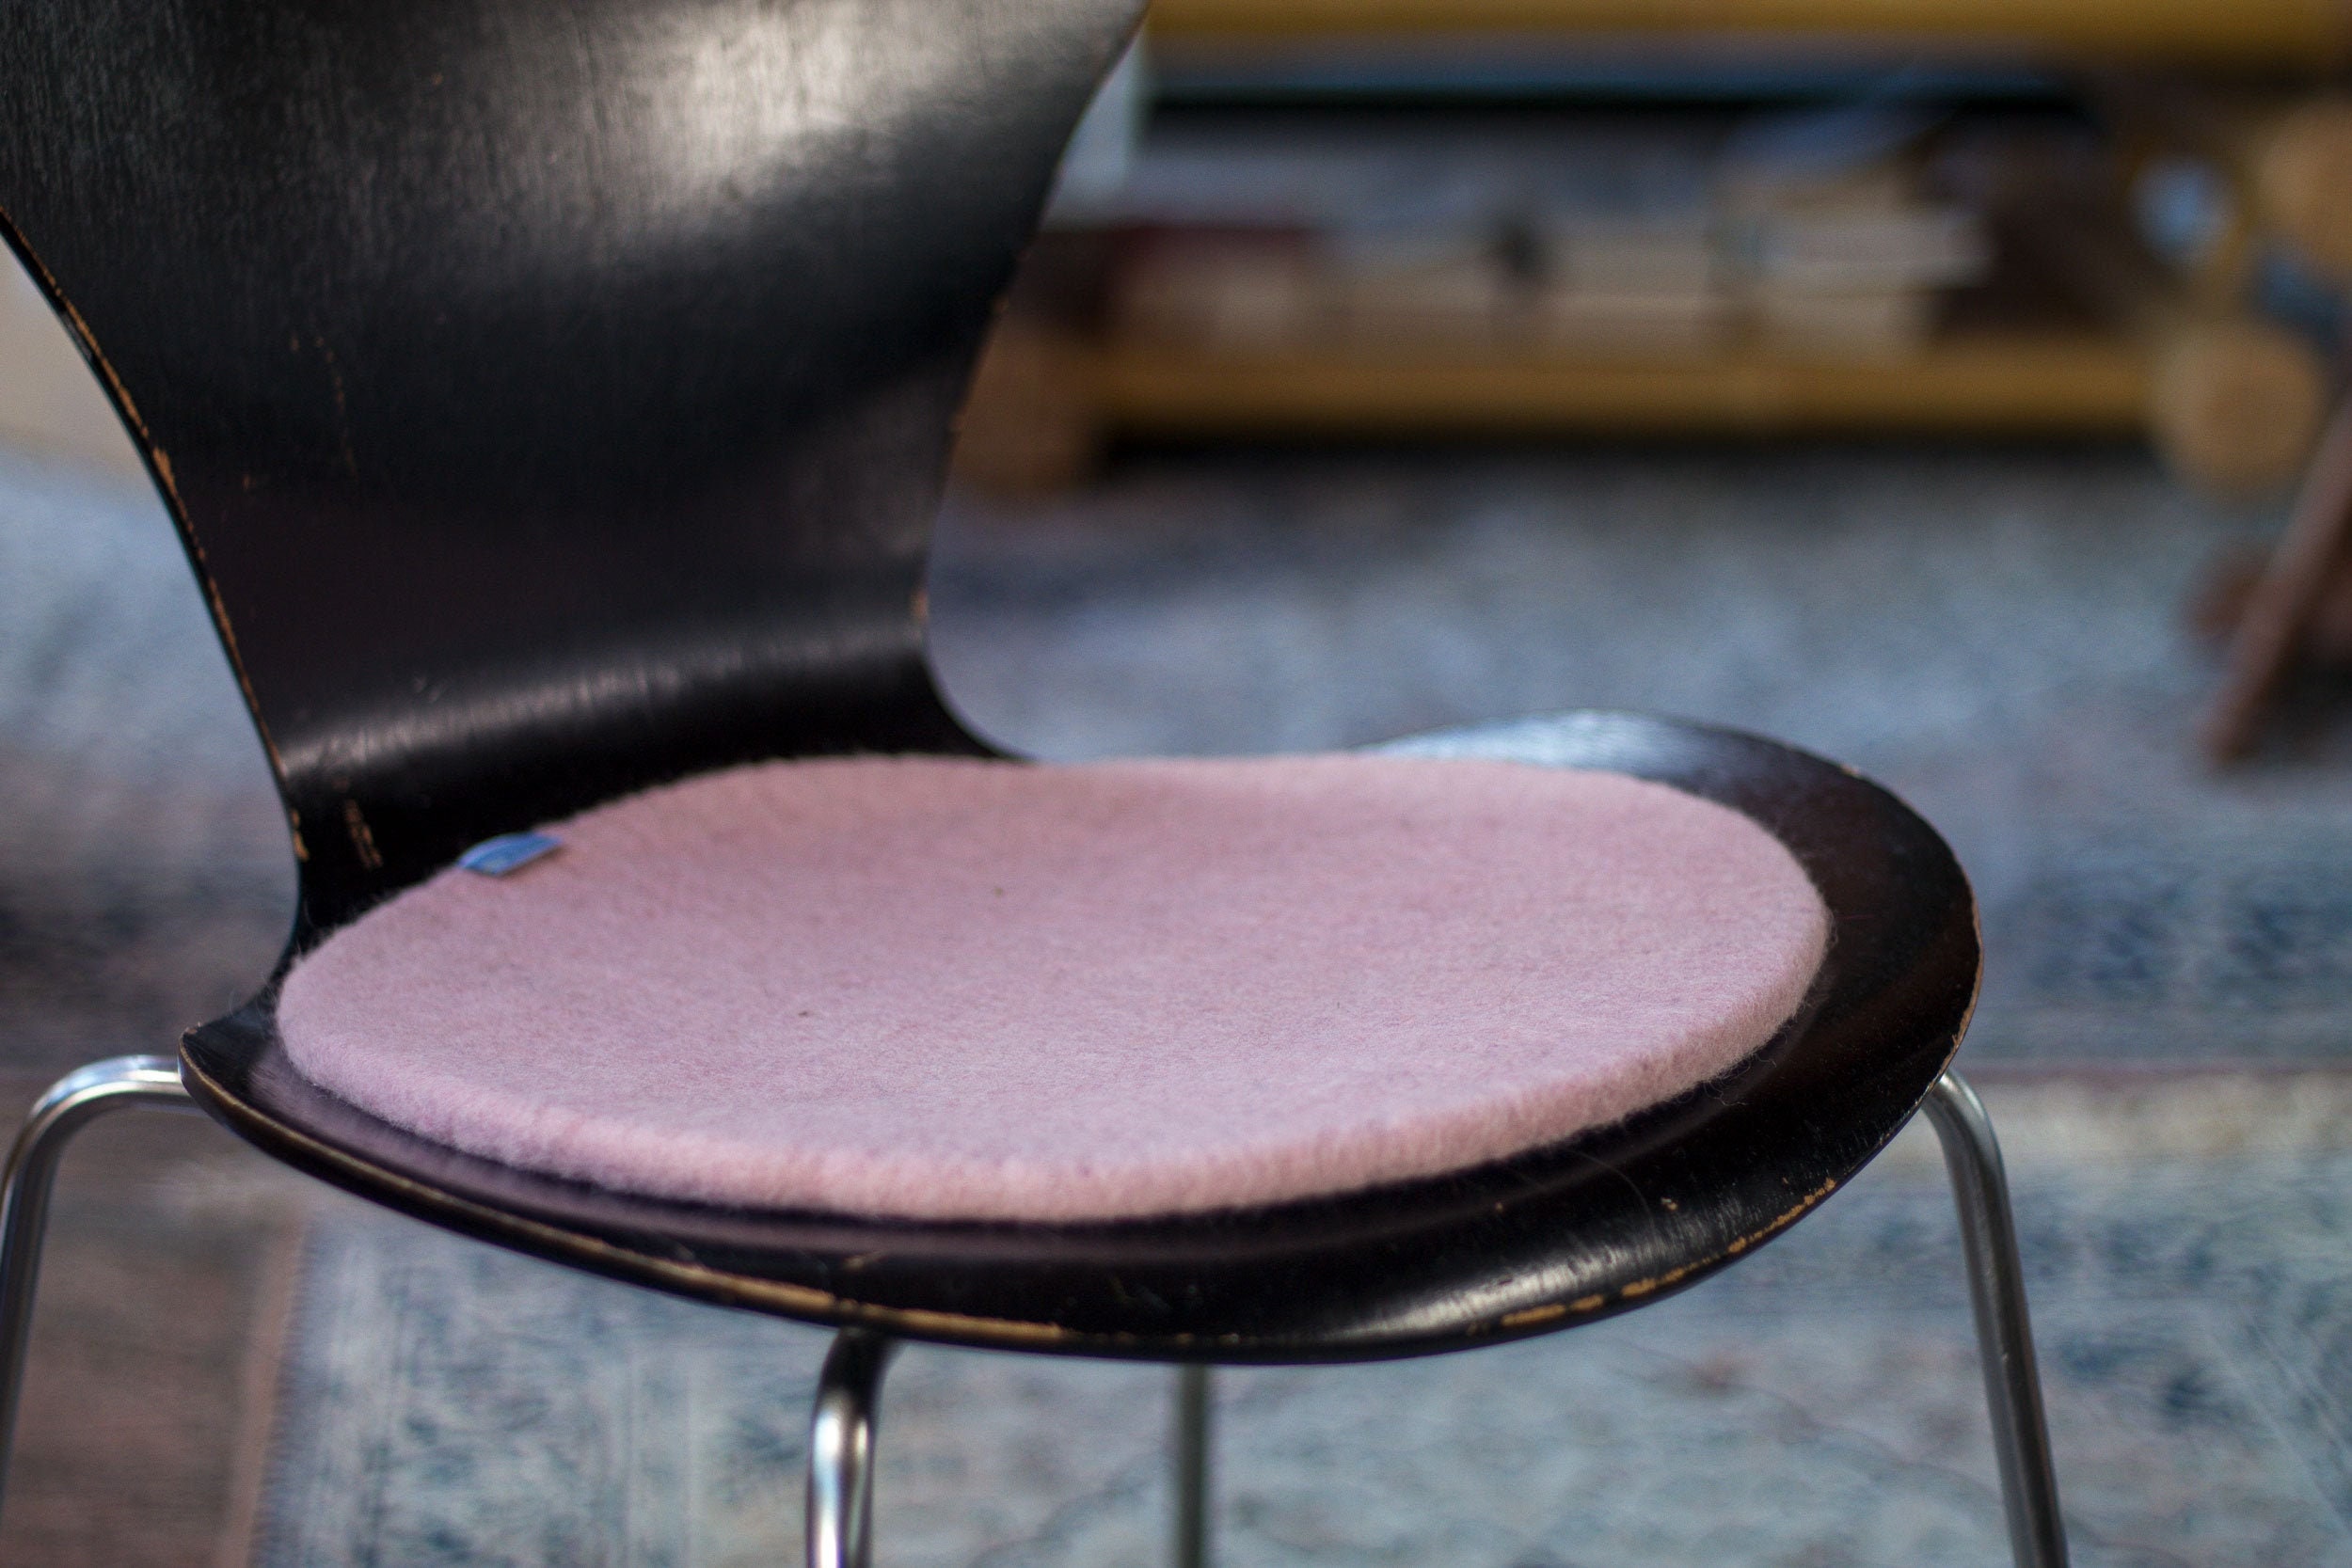  GYL-JL Cojín redondo para silla con lazos para cocina,  almohadillas de asiento redondas antideslizantes para sillas de comedor,  sillas altas, bistró, bar (color: color 4, tamaño: 13.4 in) : Hogar y